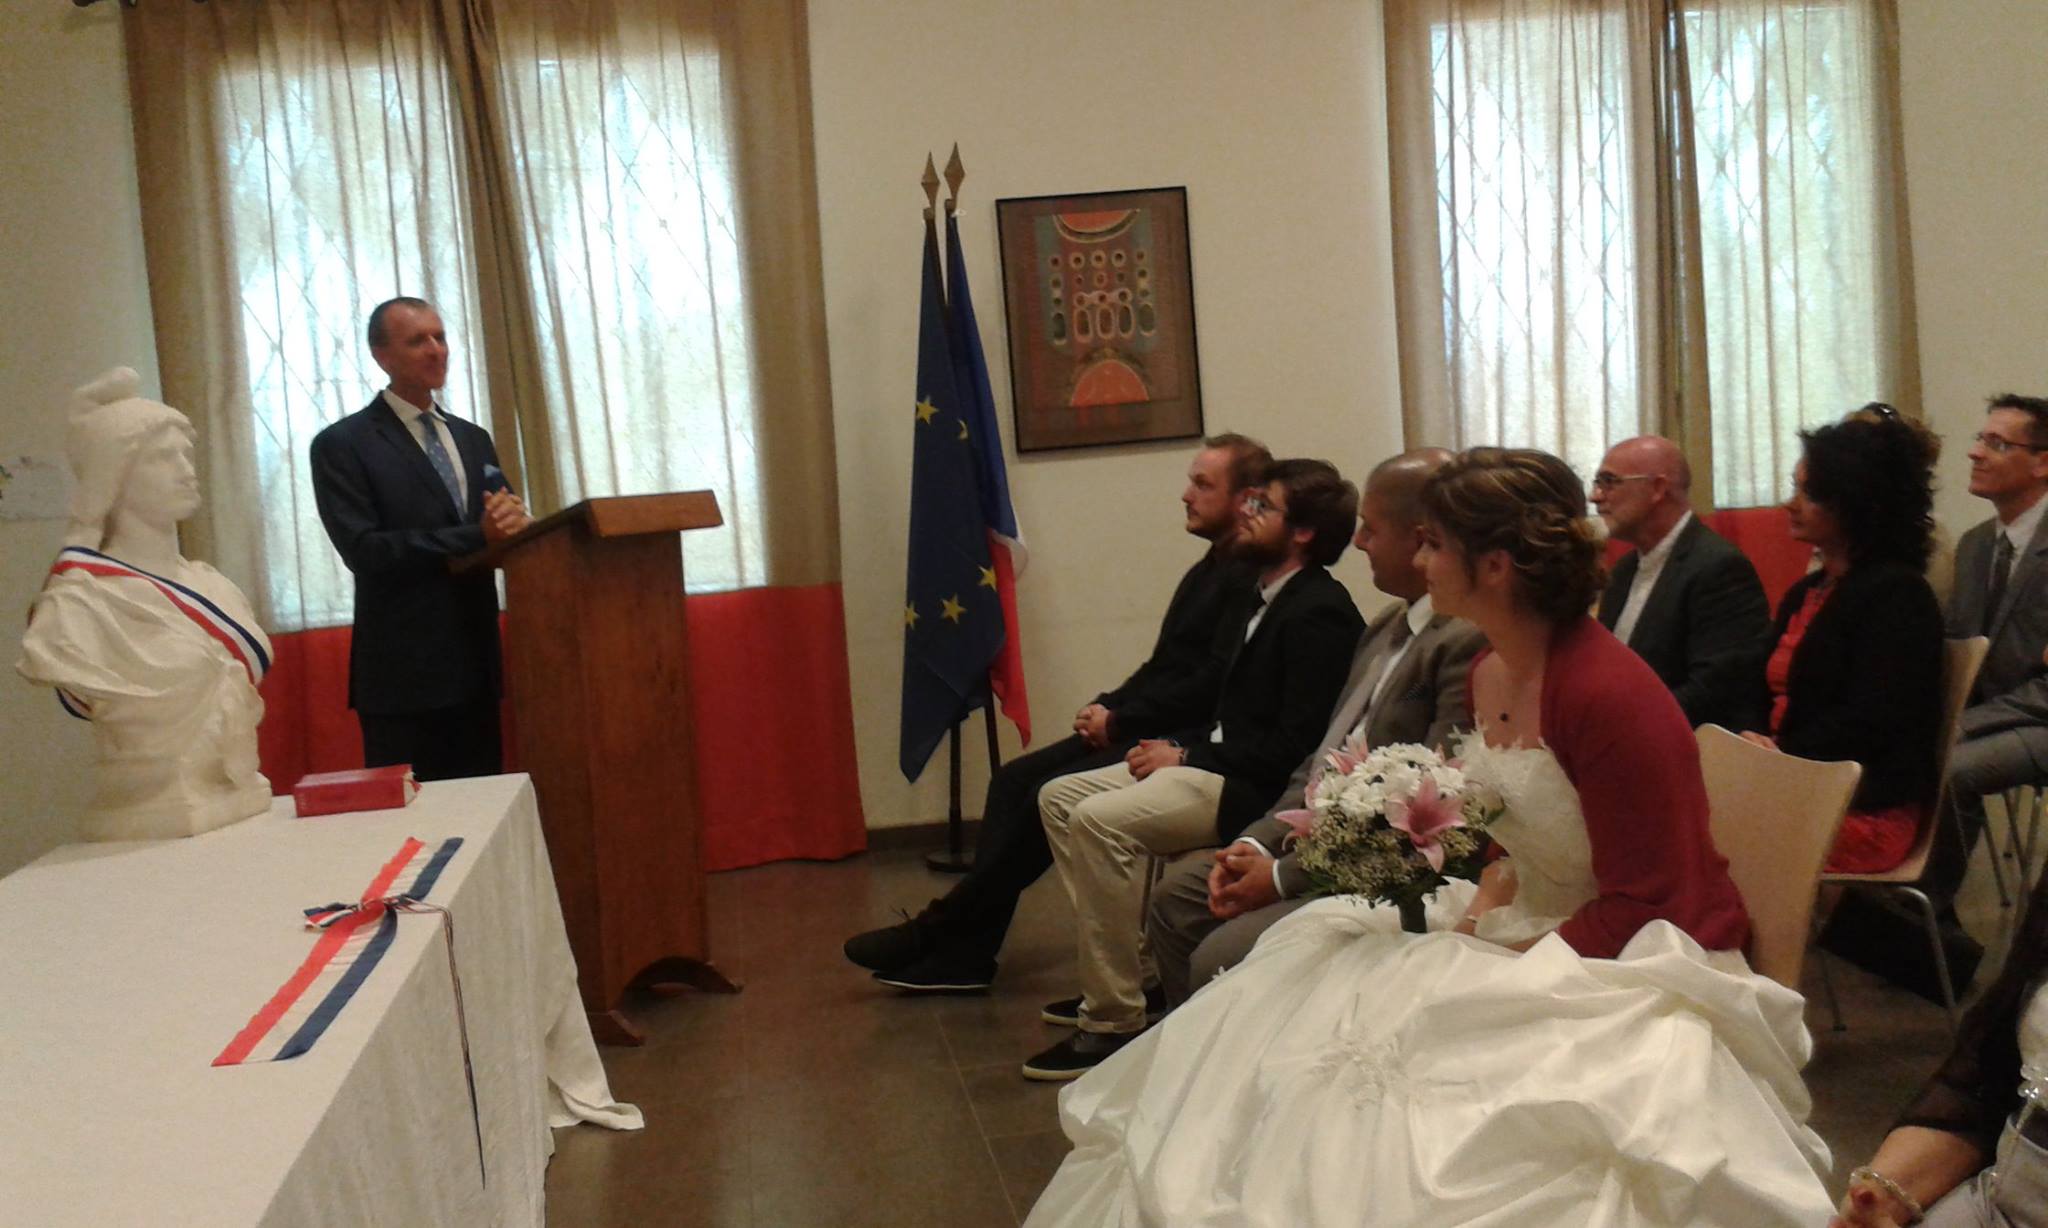 Le Consul général de France à Dakar Olivier Serot Almeras  a célébré ce jour deux mariages, longue vie aux mariés !